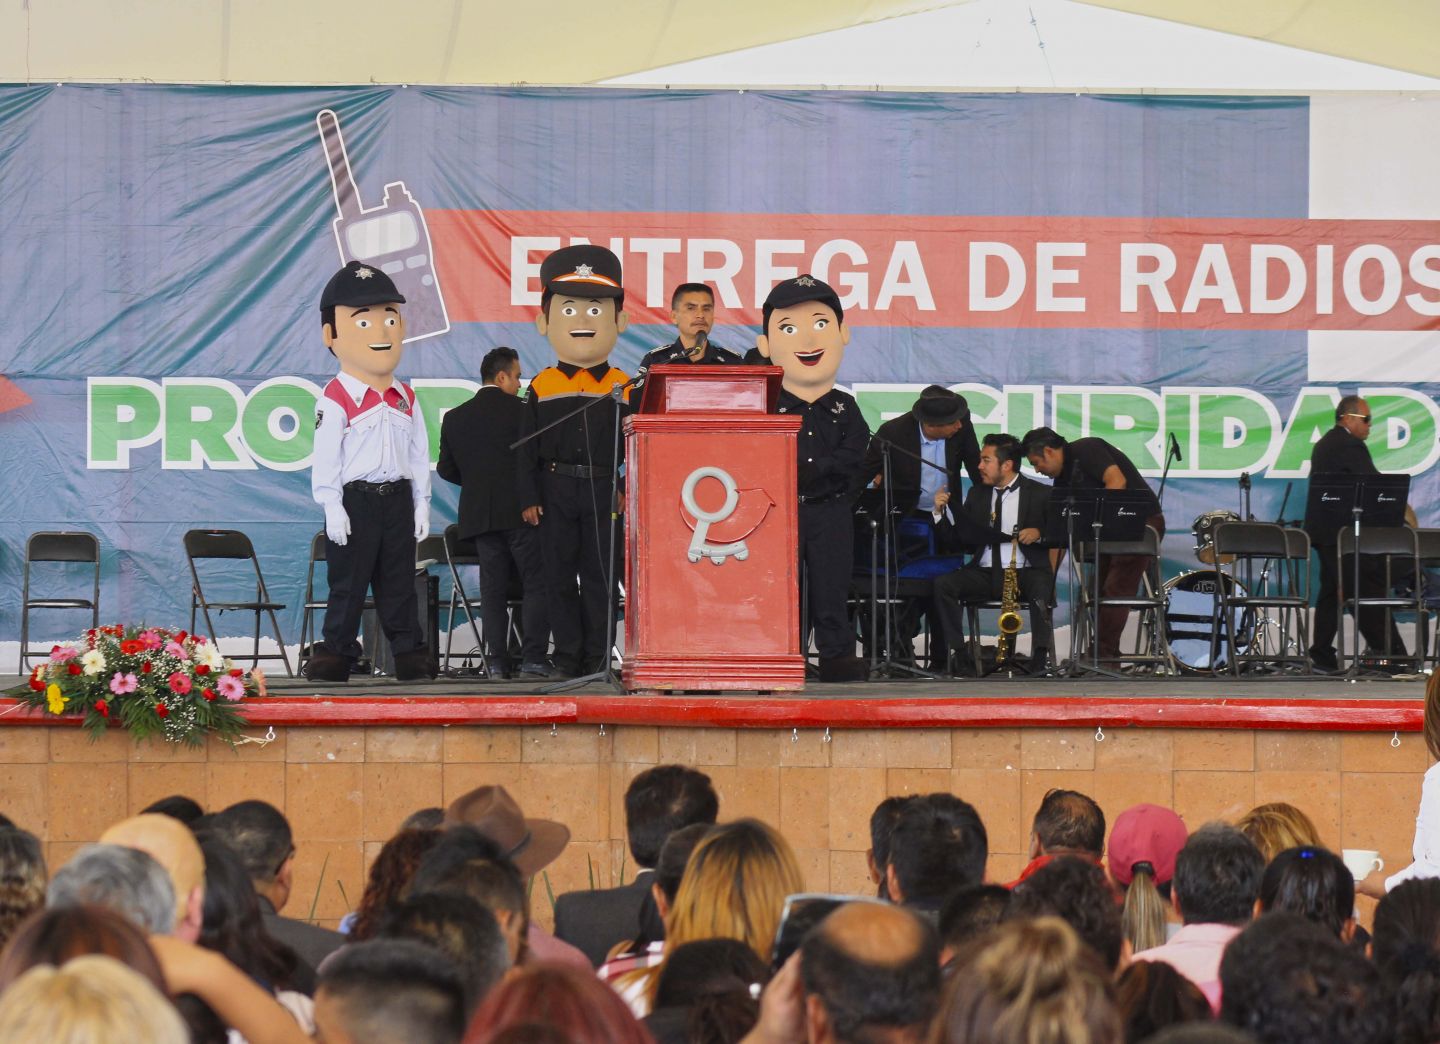 Entregan radios de Seguridad Escolar en Chimalhuacán

 